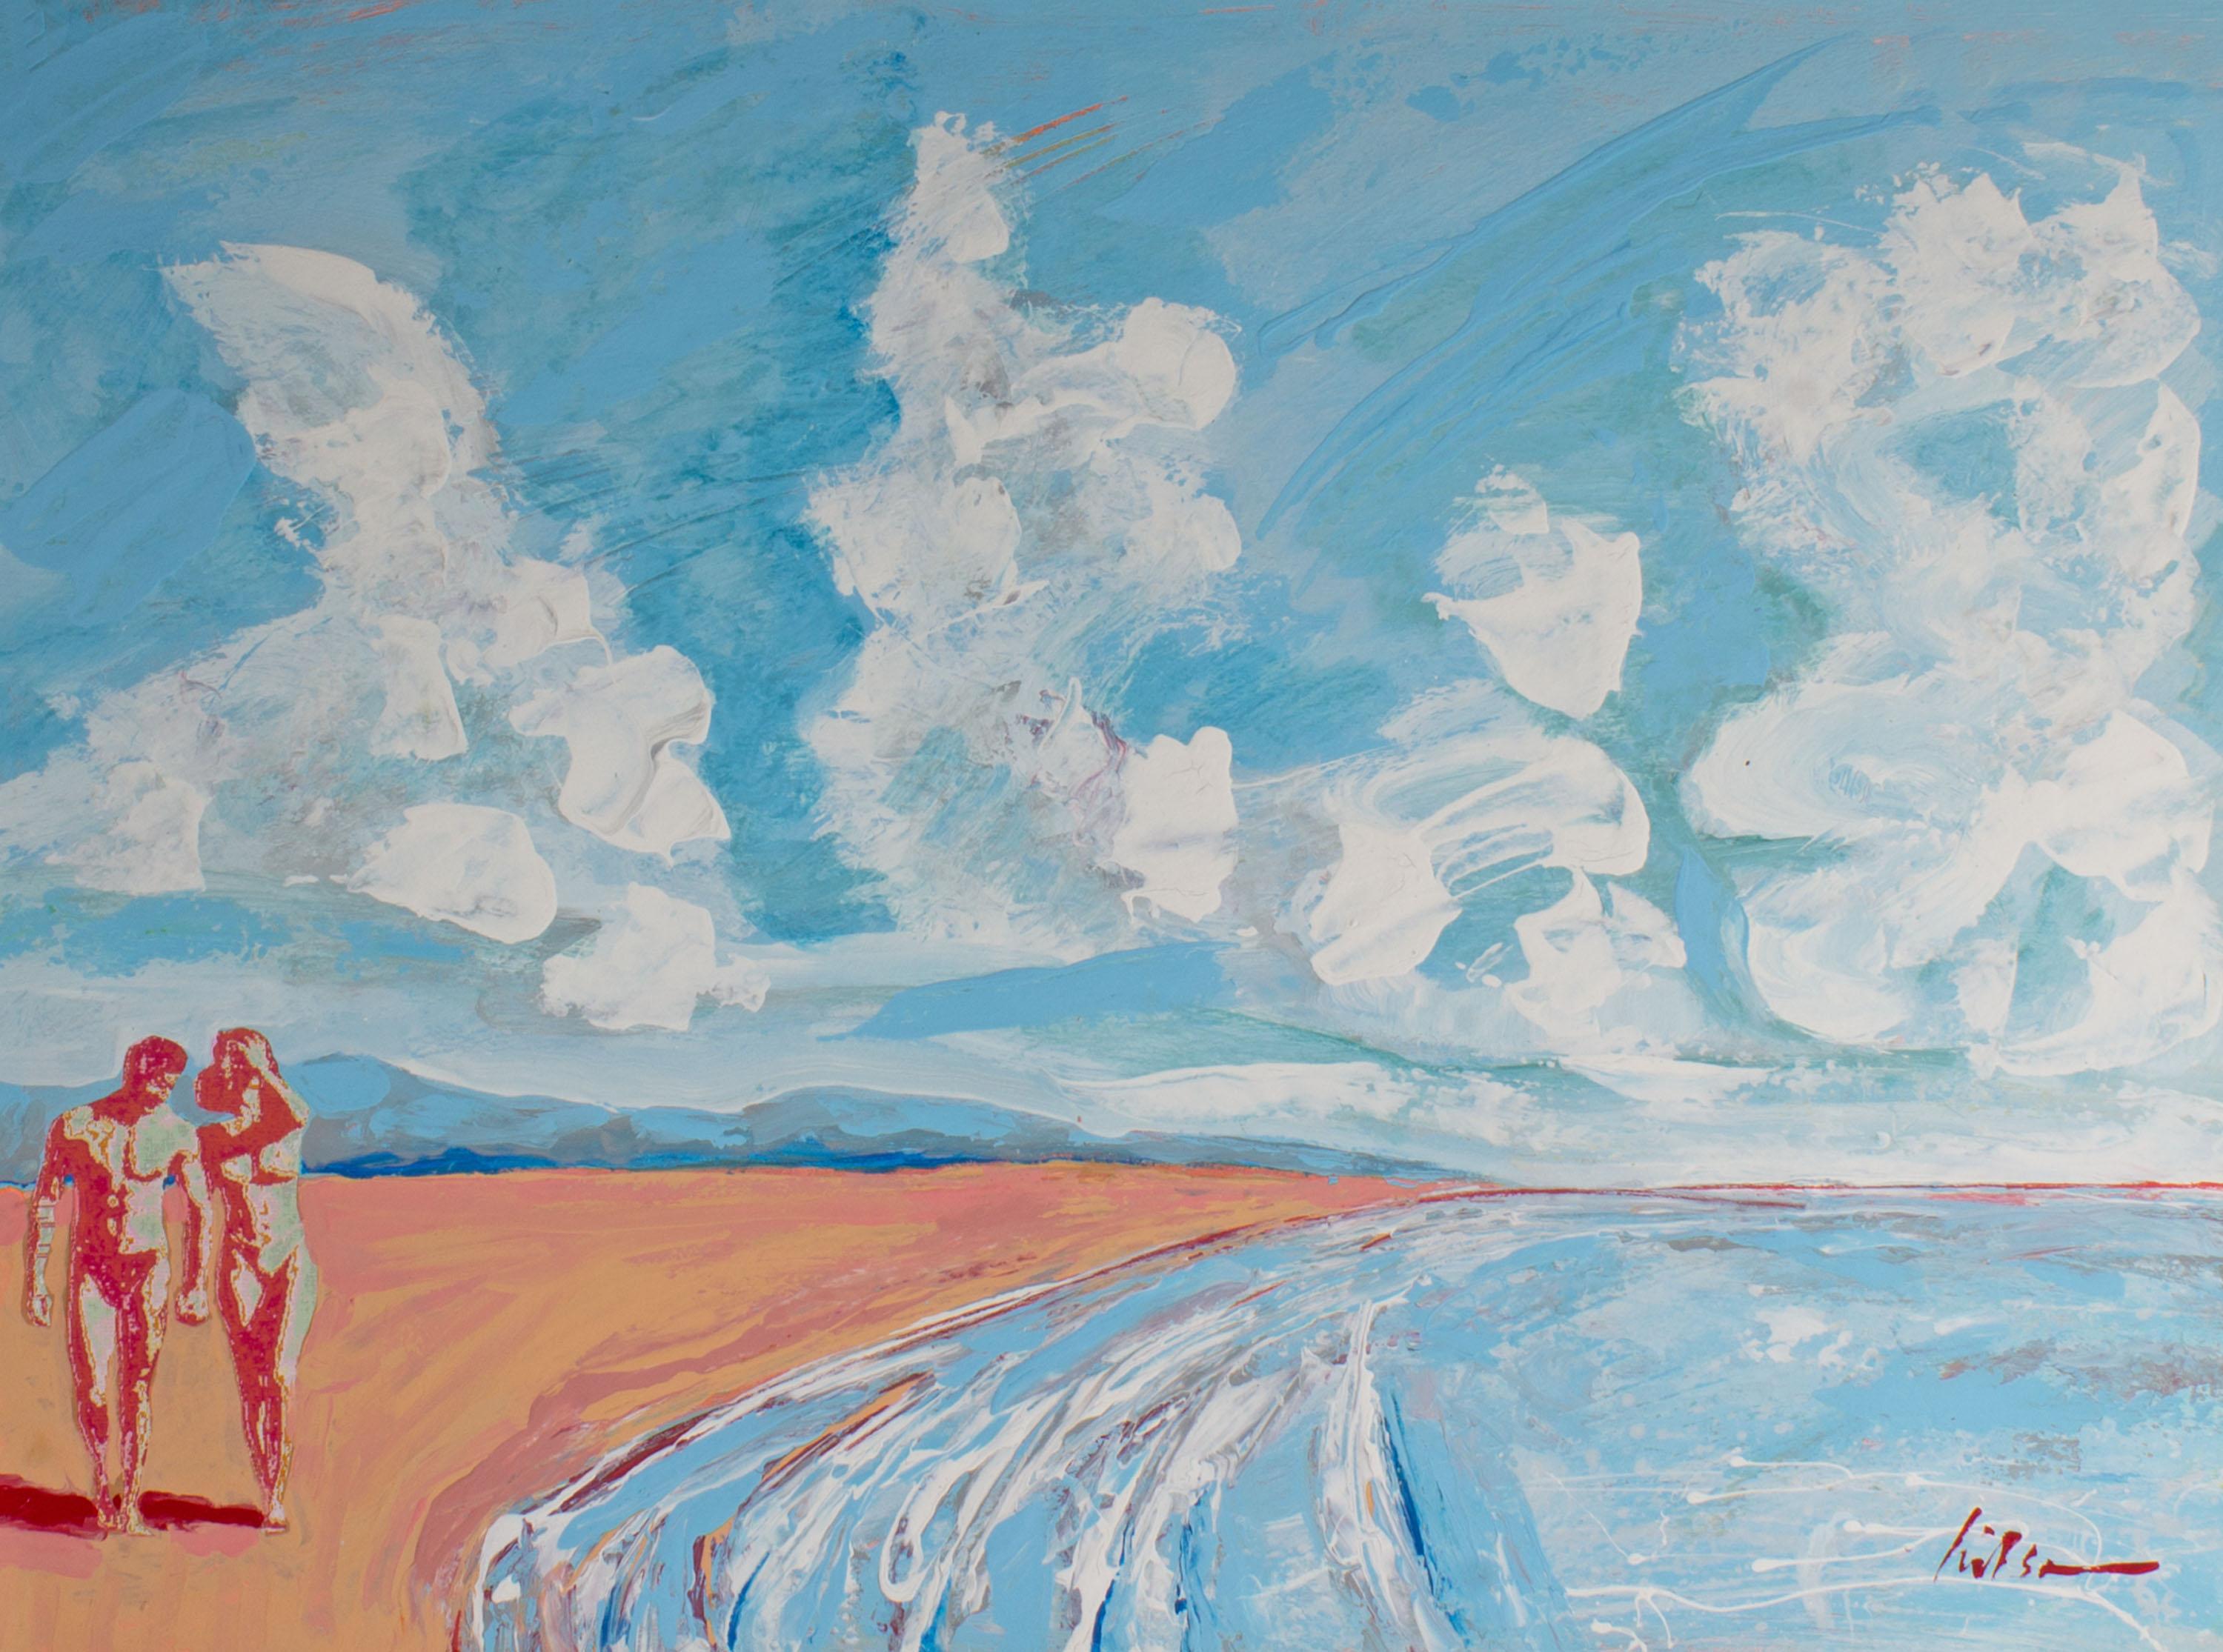 Peinture abstraite à l'acrylique et collage sur papier des années 1990 représentant un paysage de plage, réalisée par l'artiste américain Harry Harris (1935-2004). Des lignes gestuelles s'assemblent pour créer un rivage abstrait bleu et rose. Un